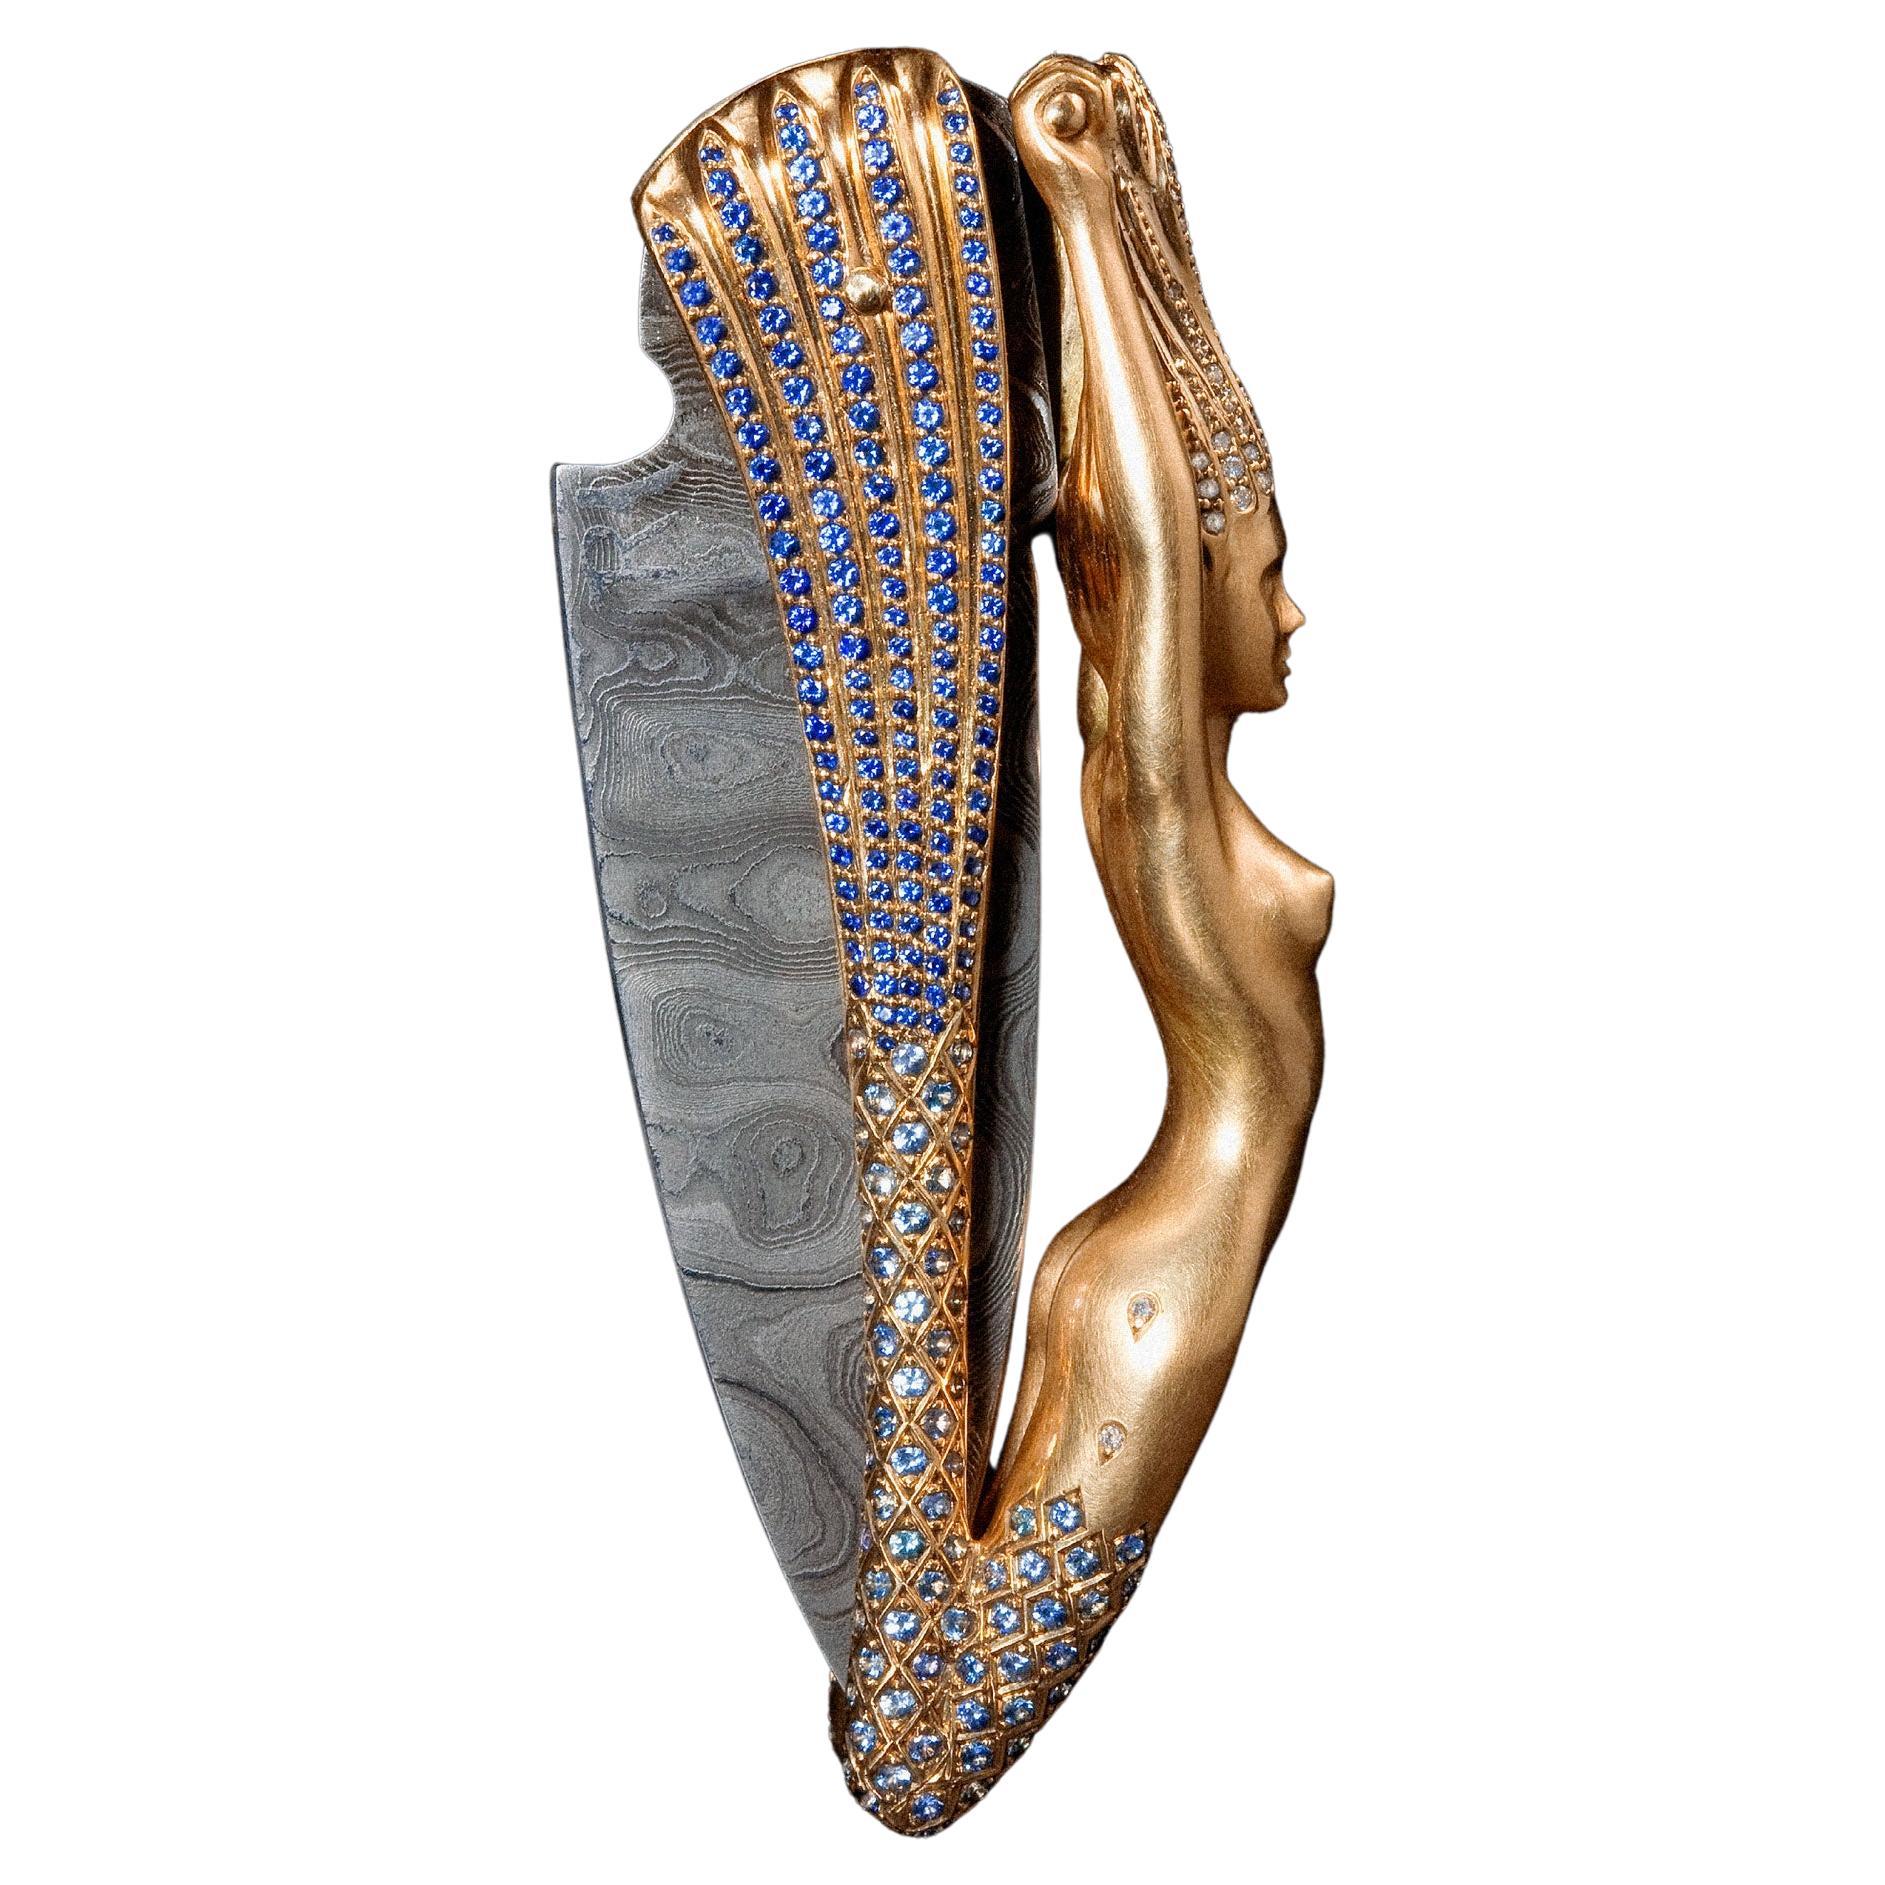 Skulpturales handgefertigtes Meerjungfrauenmesser, 18 Karat Roségold, damast, Diamanten